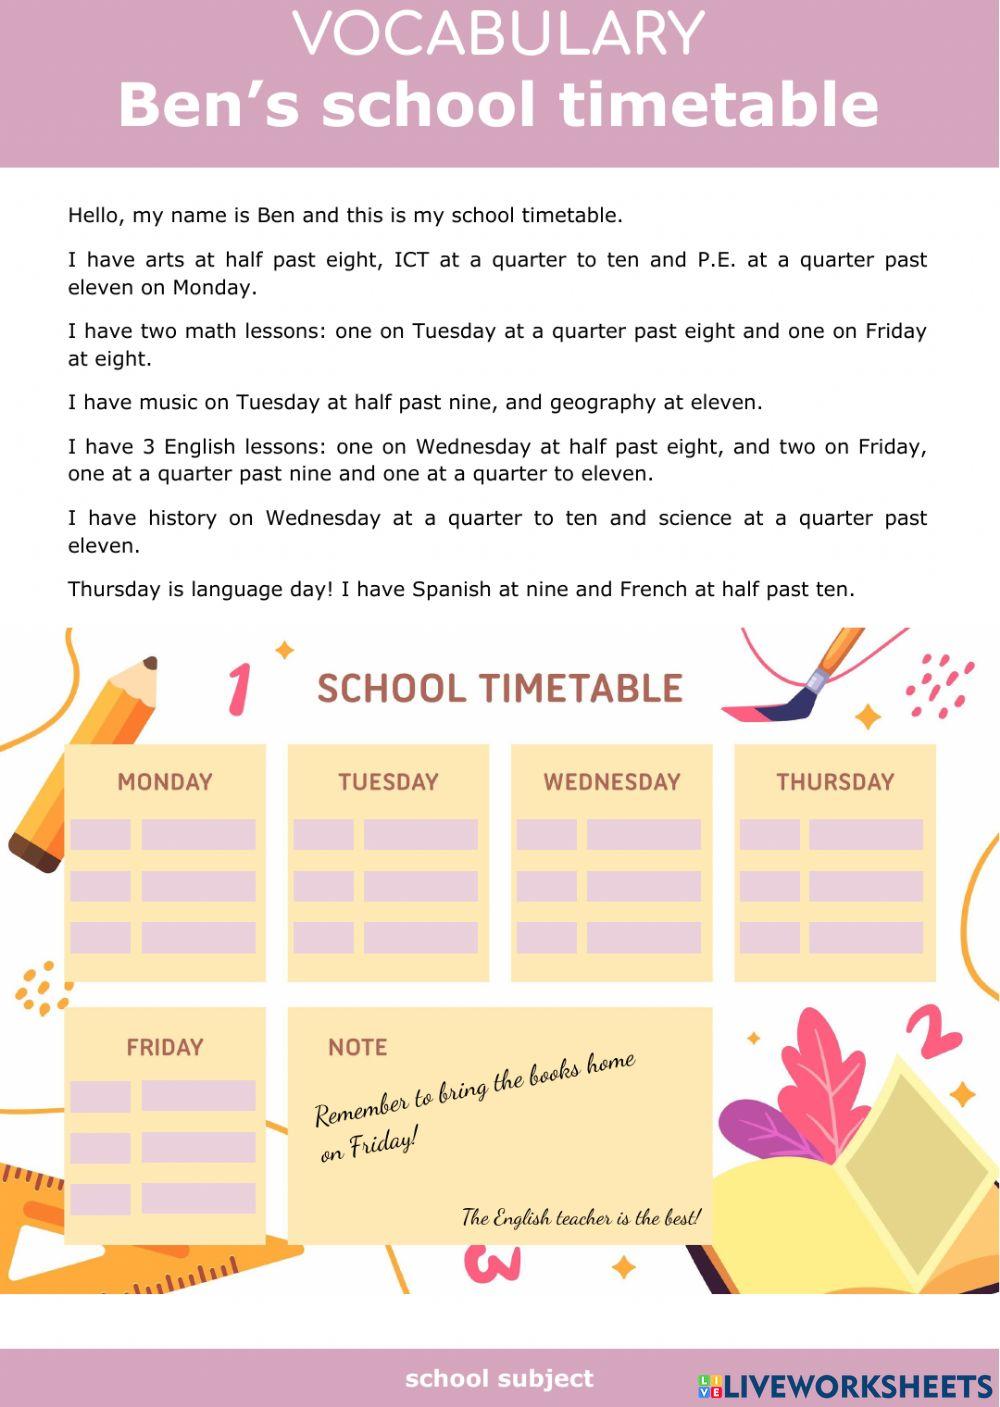 Ben's school timetable